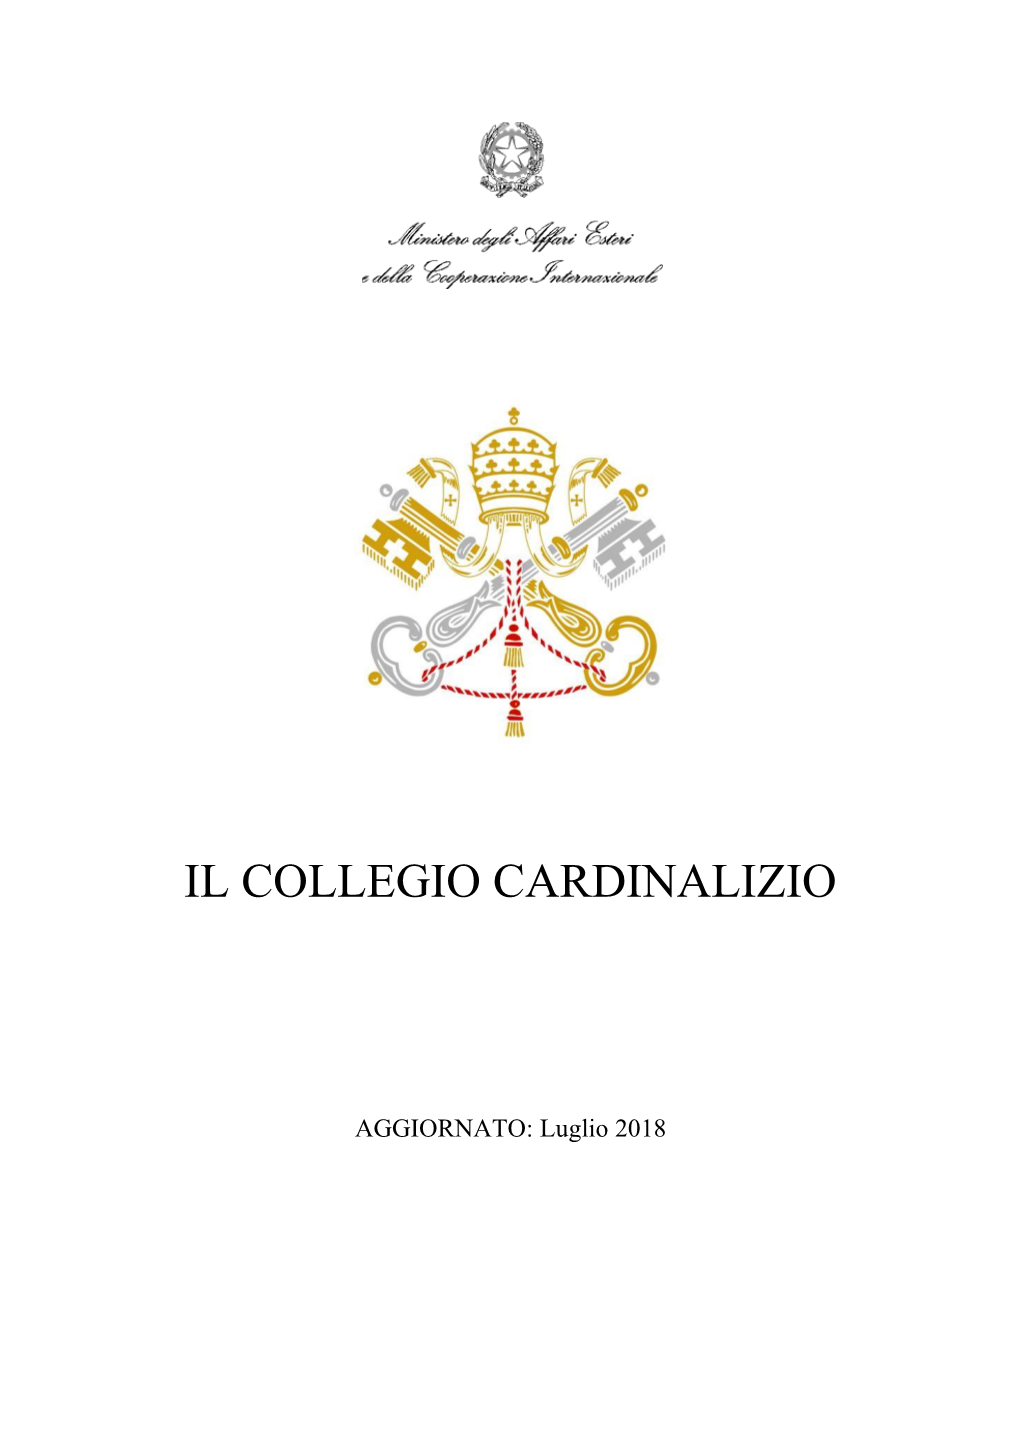 Il Collegio Cardinalizio